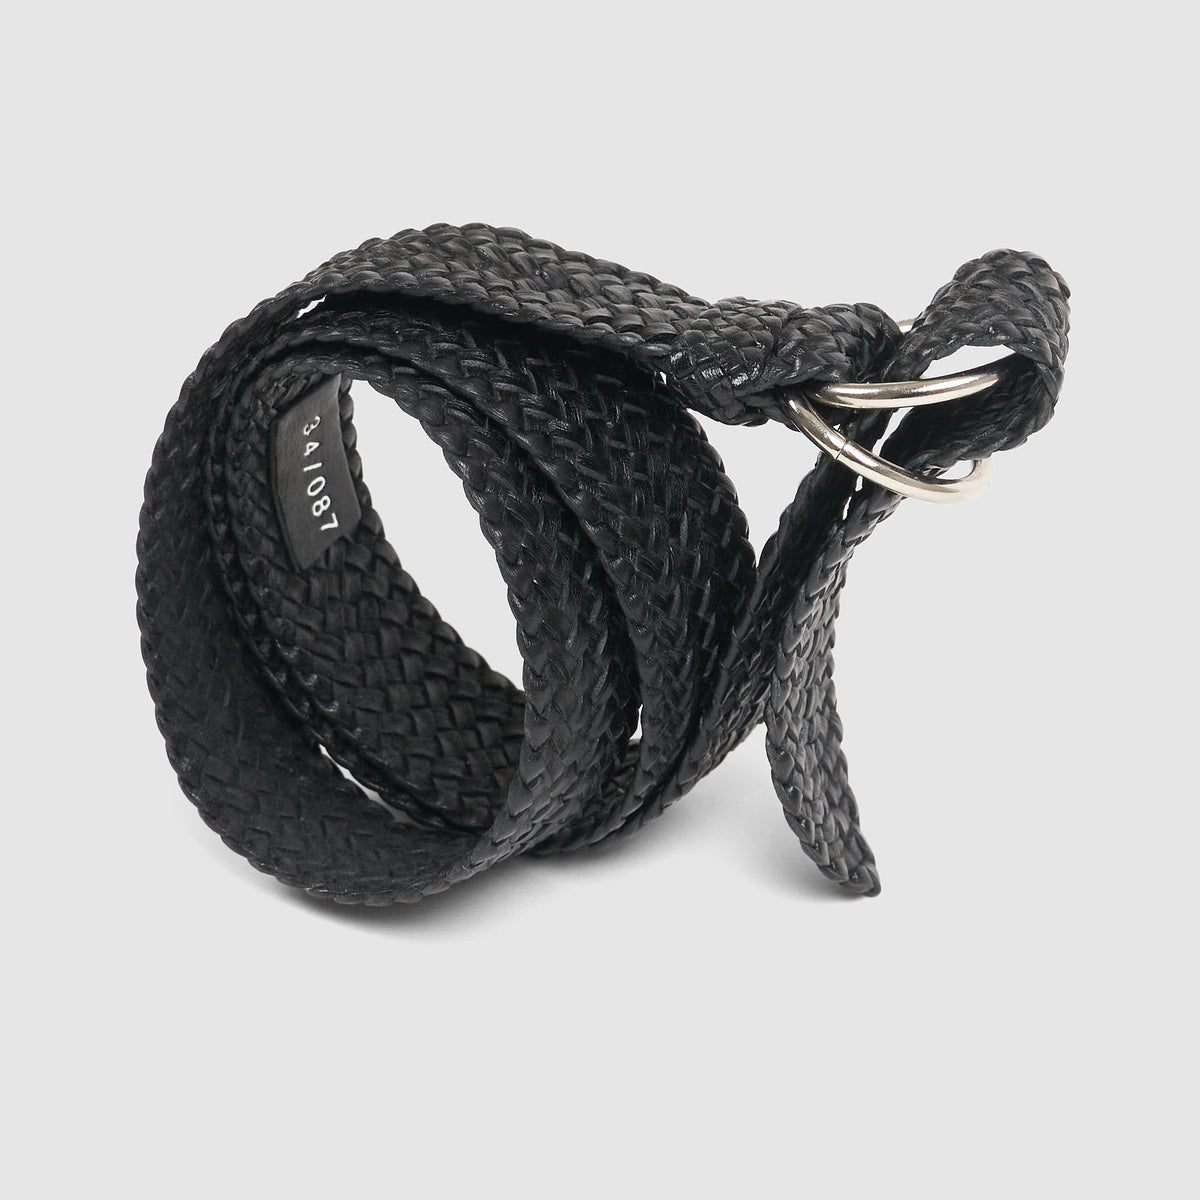 R.M. Williams Braided Kangaroo Leather Belt